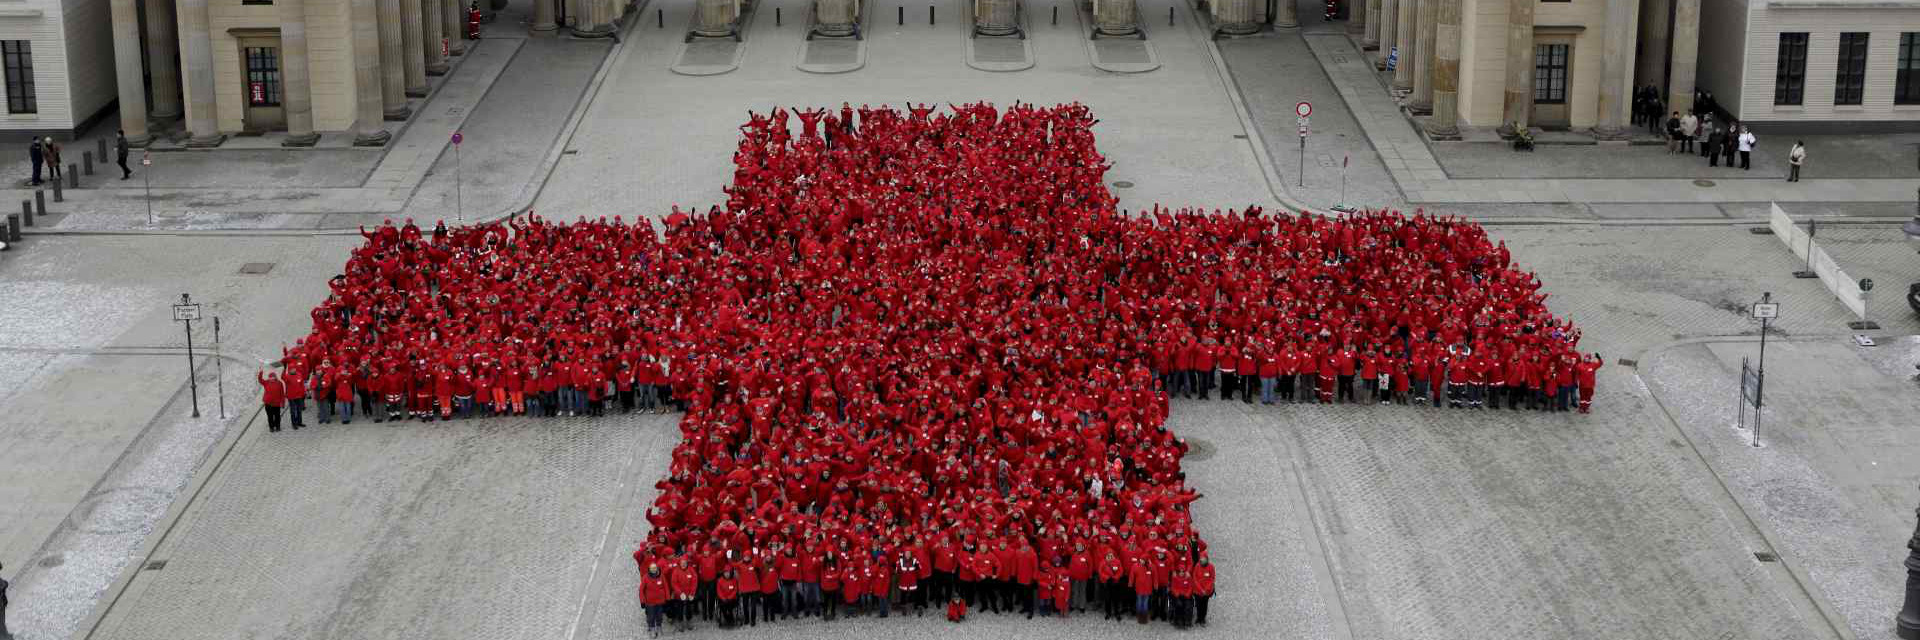 Bild zeigt Mitarbeiterinnen und Mitarbeiter des Roten Kreuzes. Sie bilden gemeinsam die Form eines Kreuzes vor dem Brandenburger Tor in Berlin.